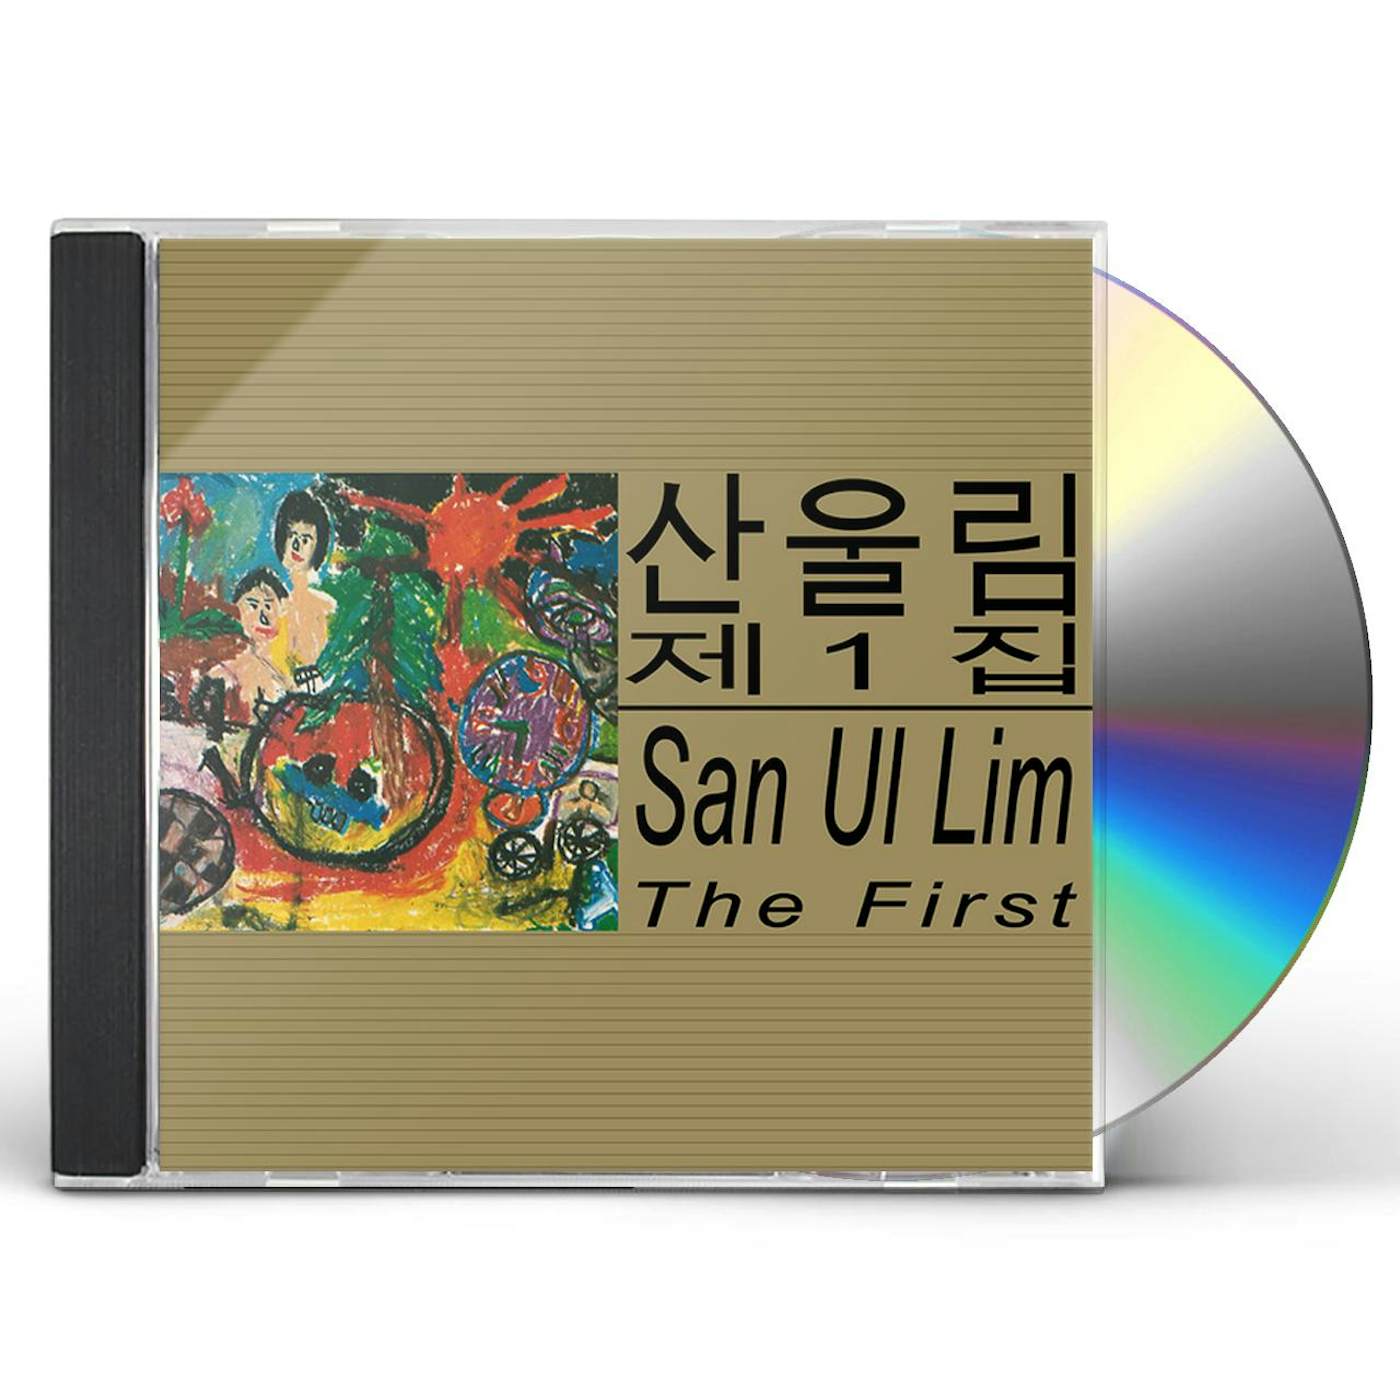 SAN UL LIM FIRST CD